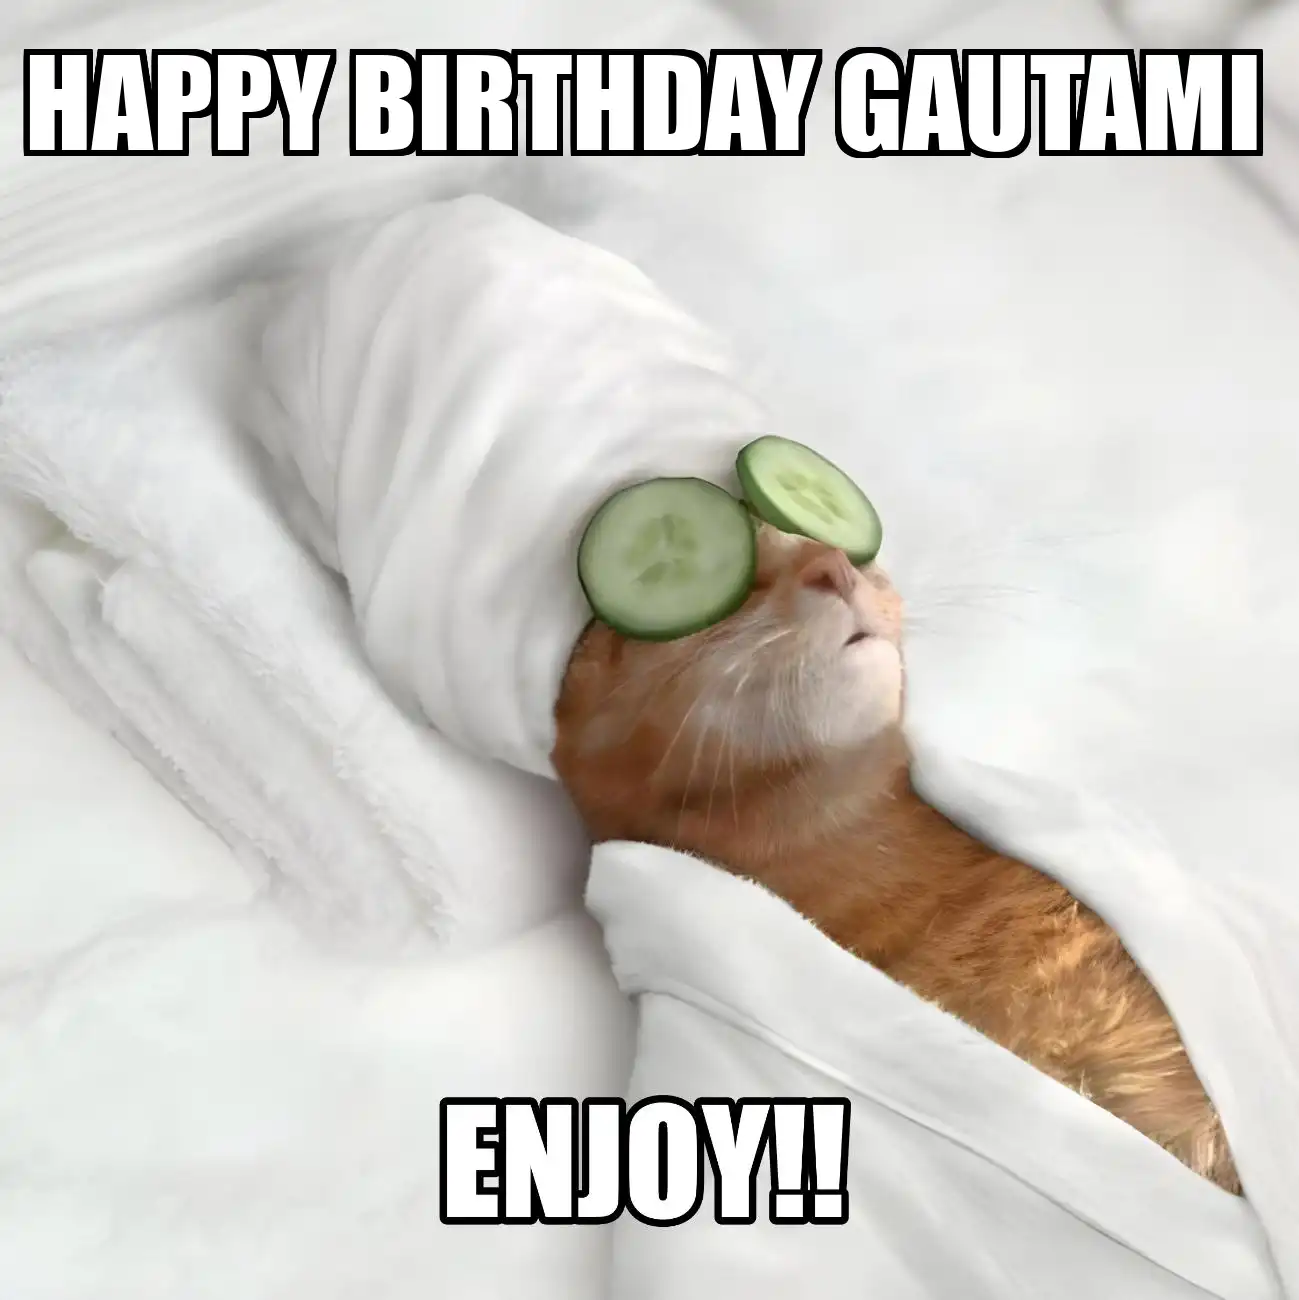 Happy Birthday Gautami Enjoy Cat Meme